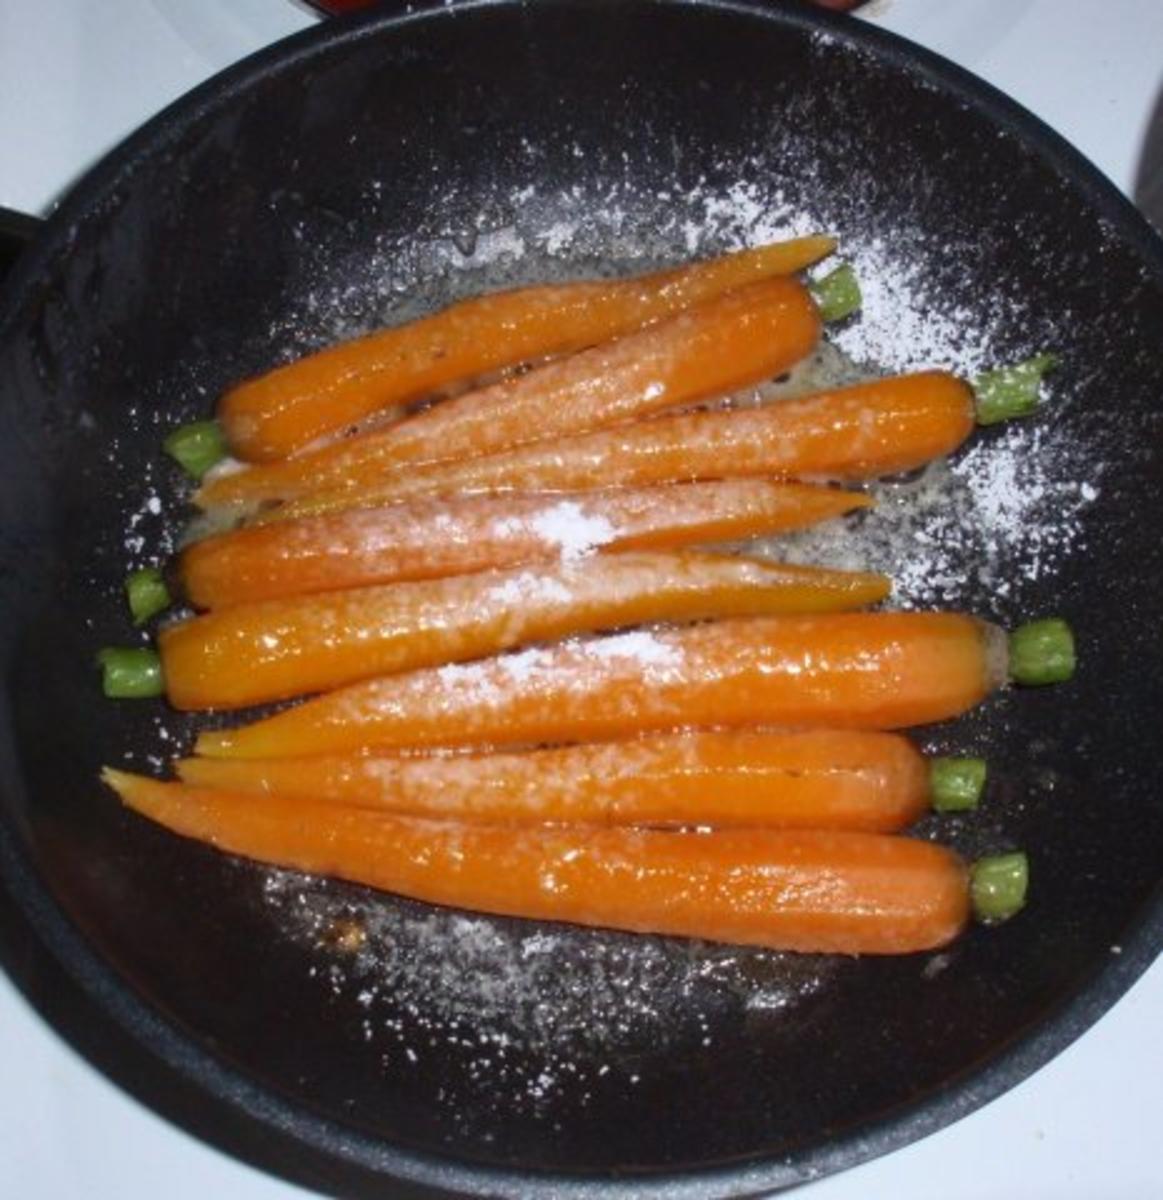 Filetstreifen in Tomatensugo mit glasierten Karotten und Basmatireis - Rezept - Bild Nr. 13